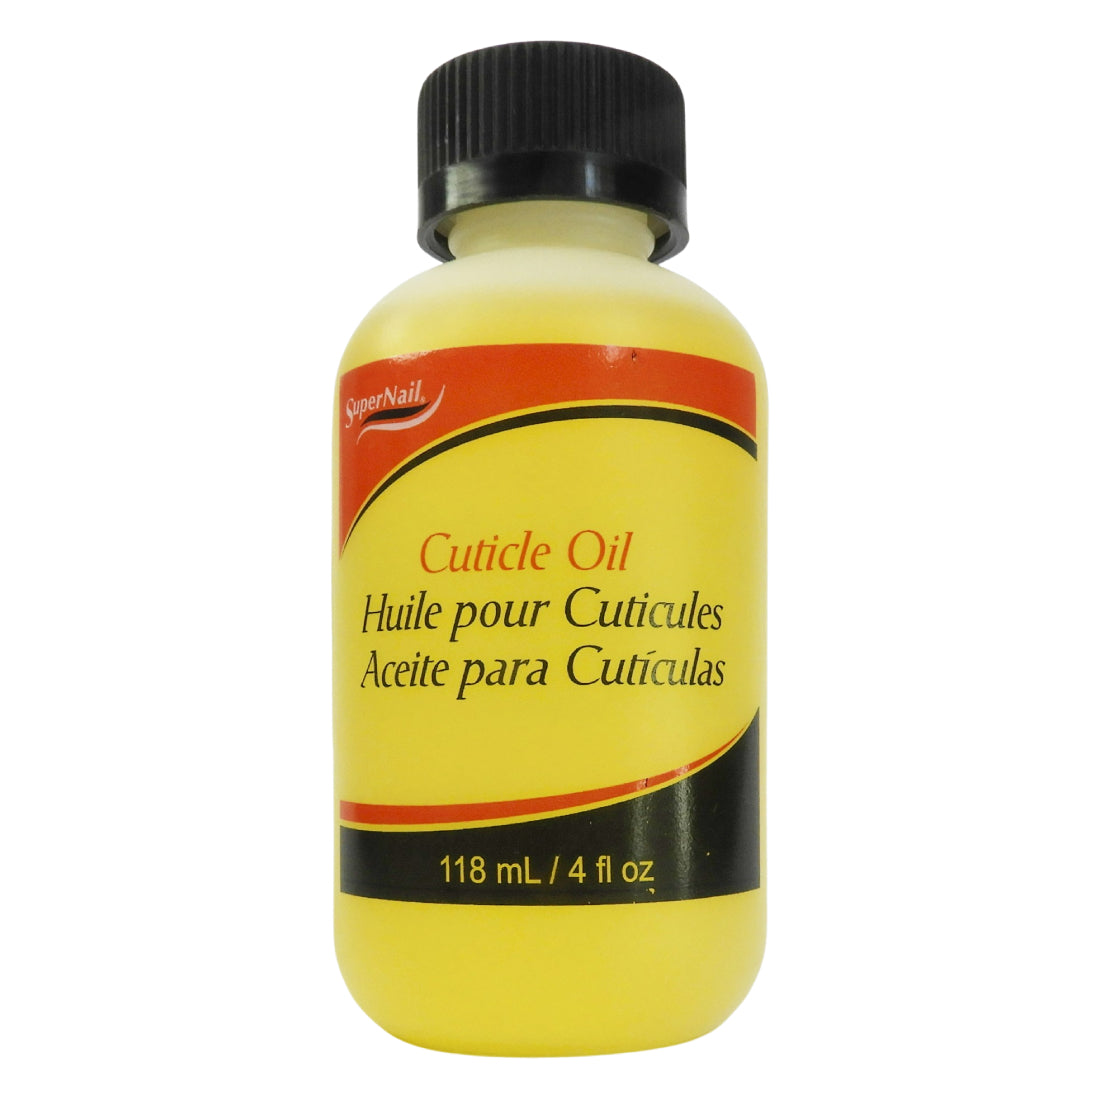 Super Nail Cuticle Oil 118ml - Aceite para cutícula